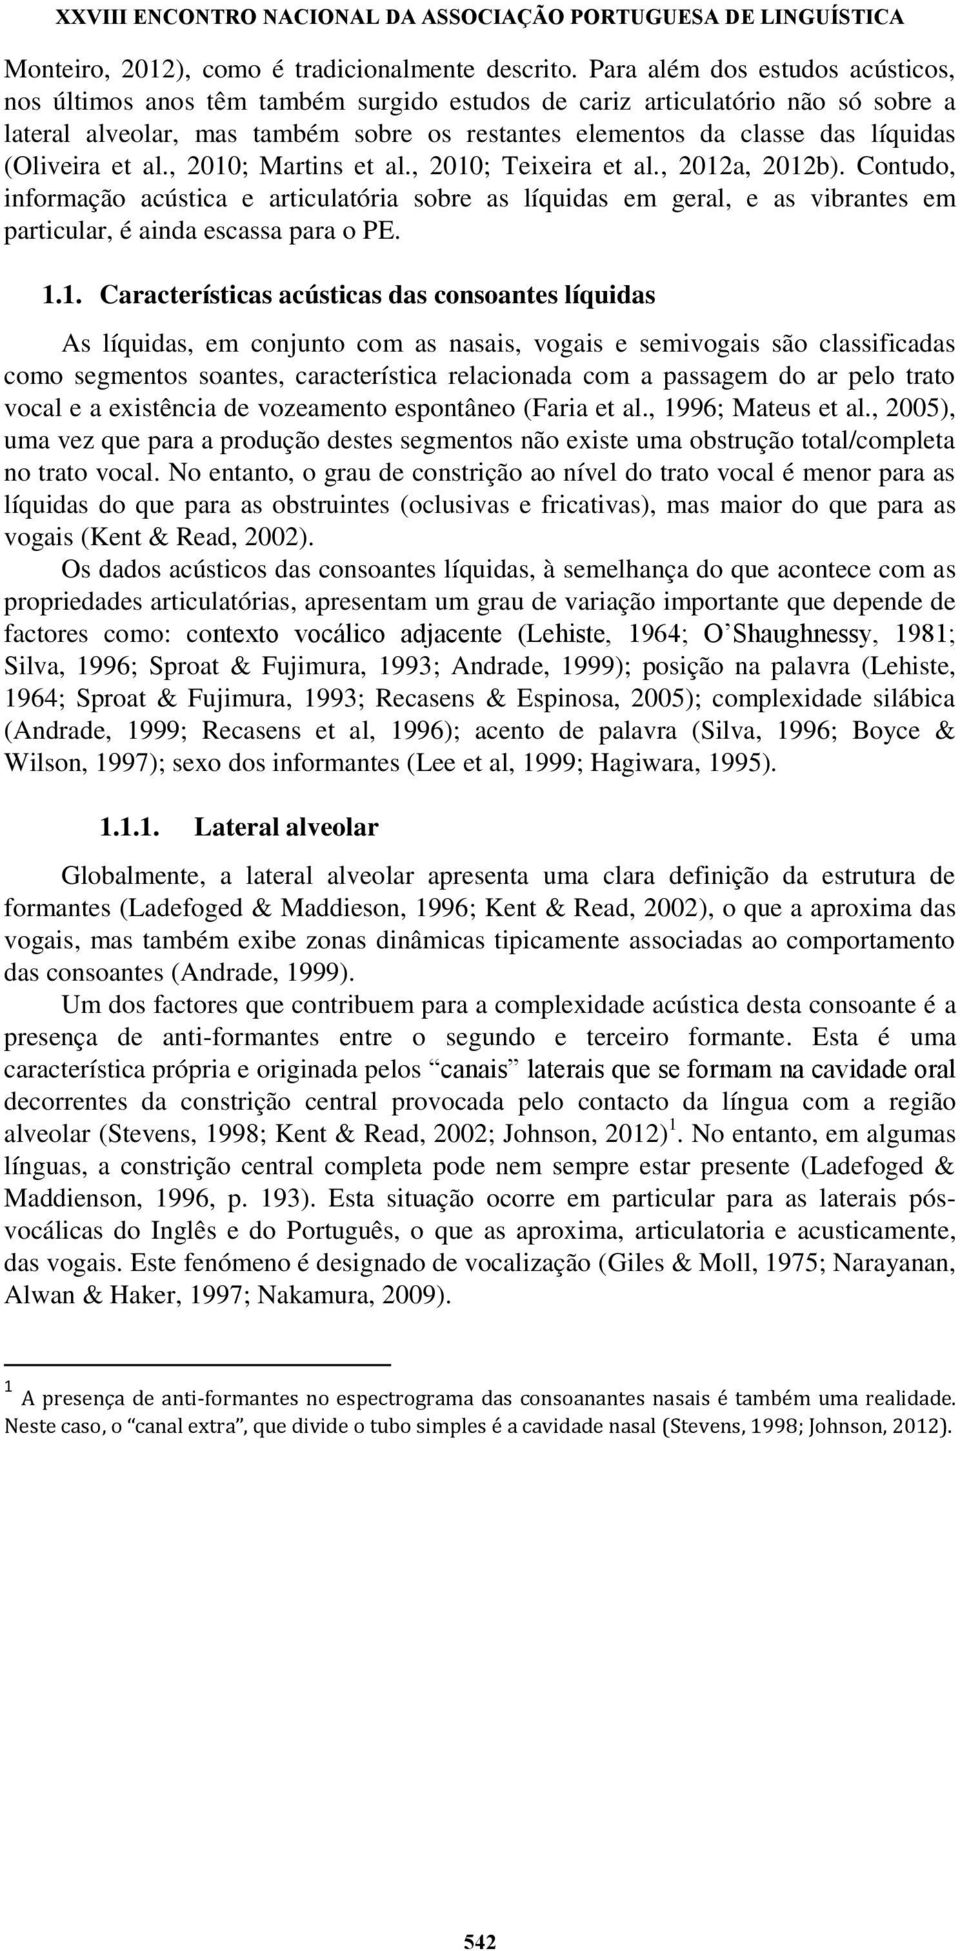 (Oliveira et al., 2010; Martins et al., 2010; Teixeira et al., 2012a, 2012b).